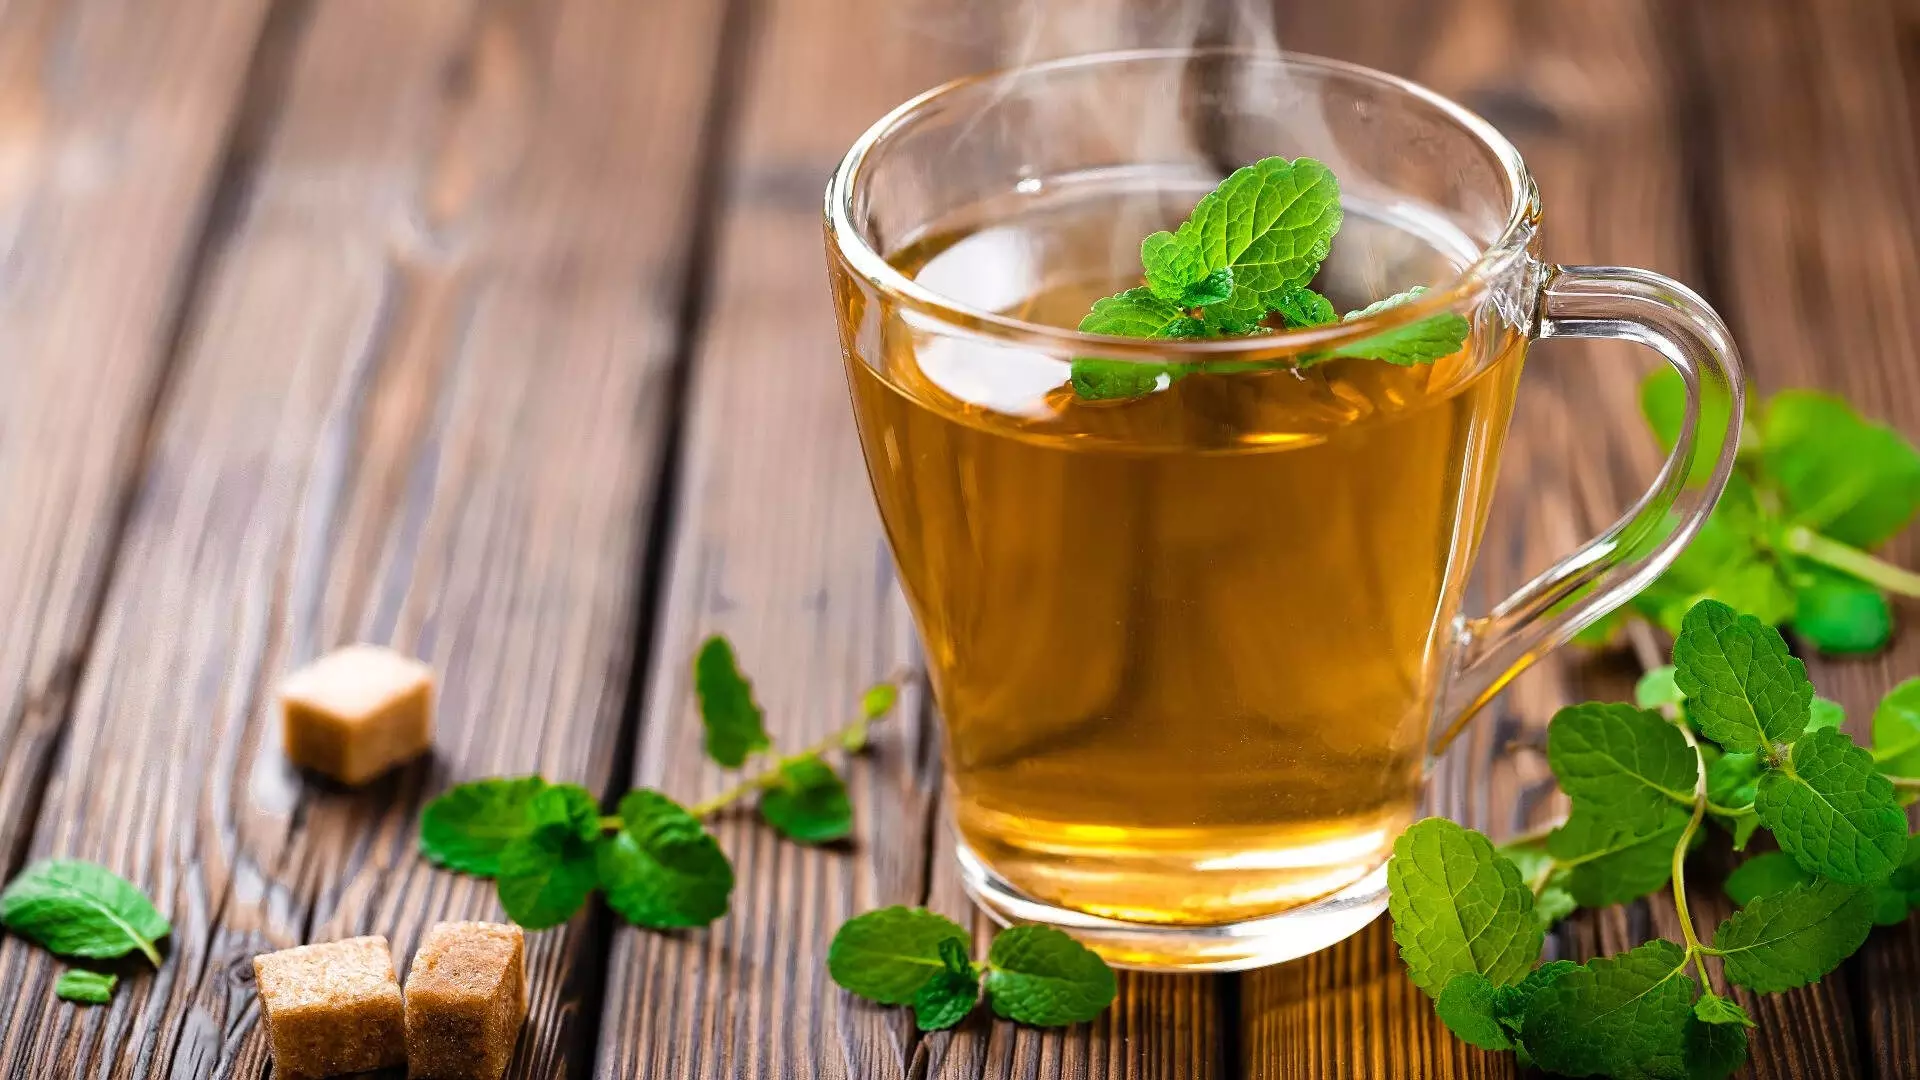 पुदीना चाय के अद्भुत स्वास्थ्यवर्धक लाभ